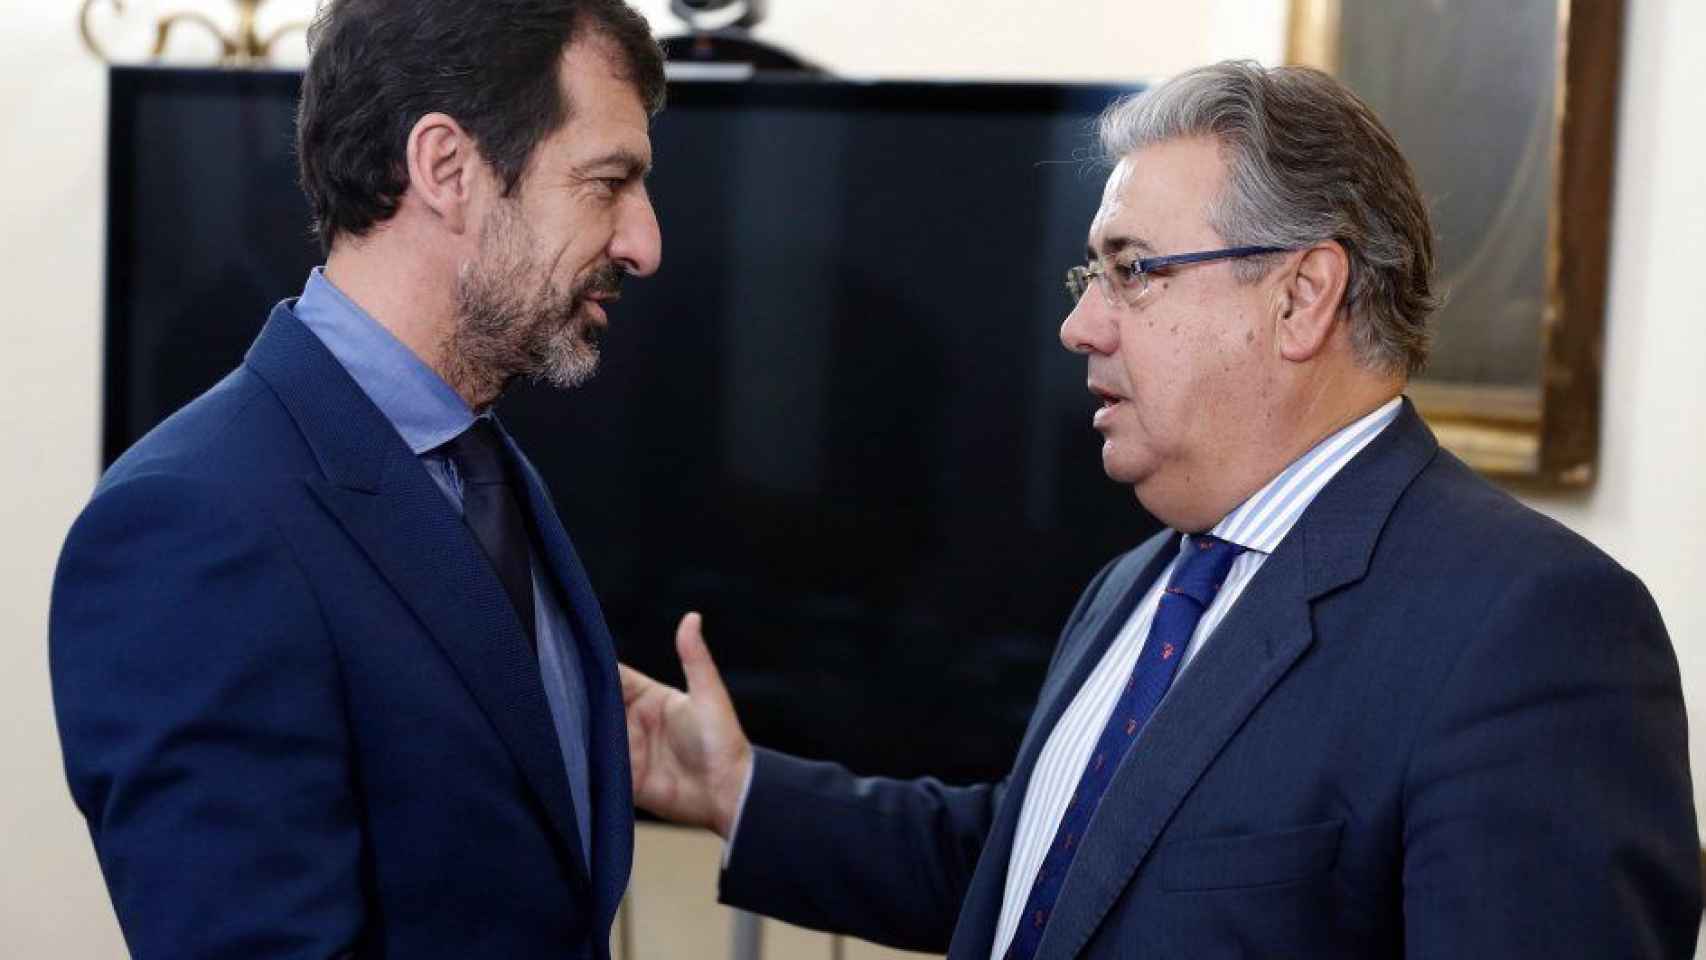 El mayor de los Mossos d'Esquadra, Ferran López, saluda al ministro de Interior, Juan Ignacio Zoido / EFE